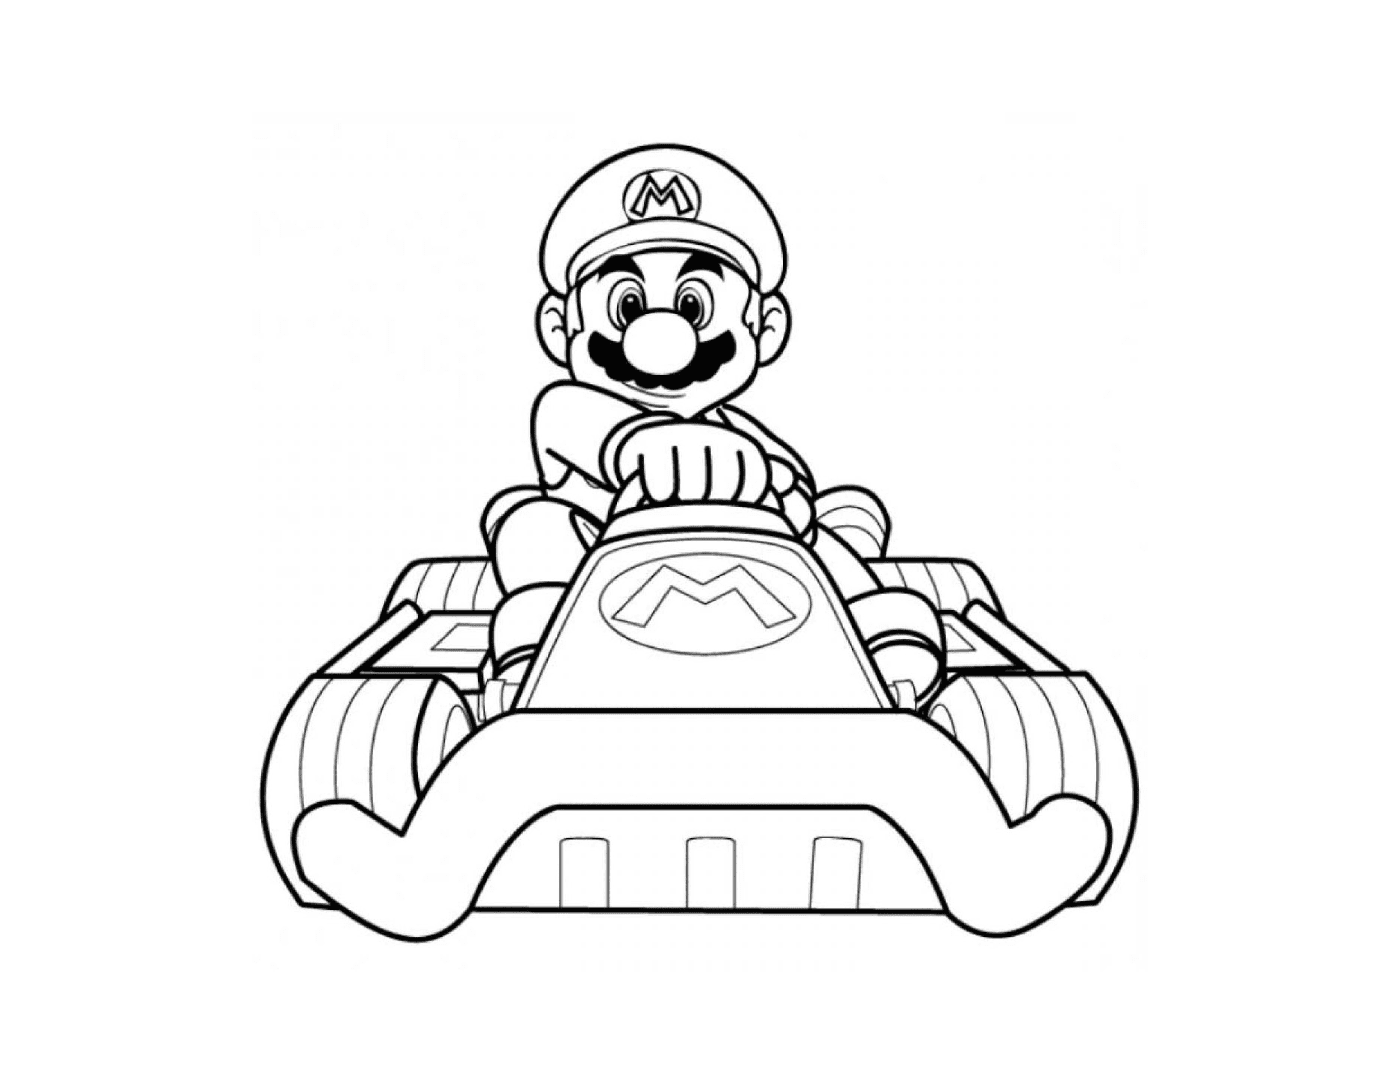  Марио Карт Уи со своей цветной машиной 